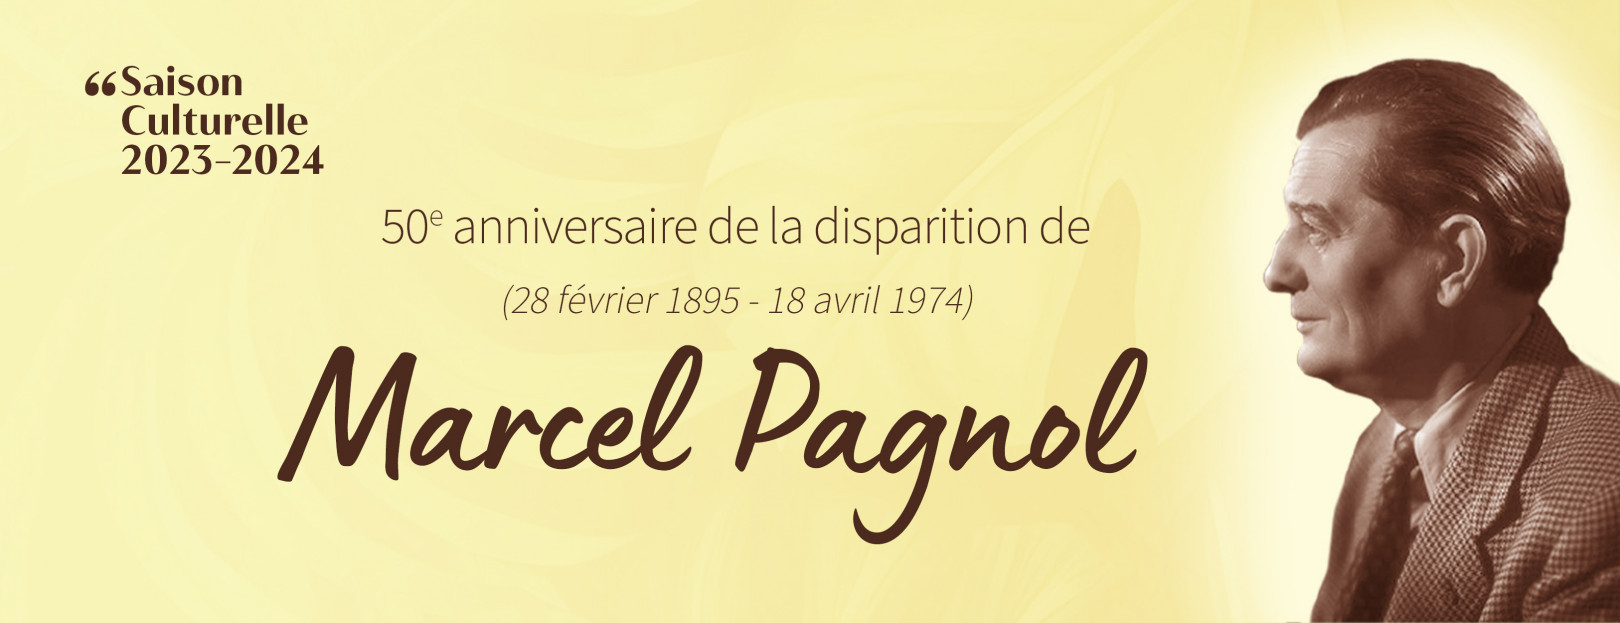 BANDEAU ACCUEIL SITE Marcel Pagnol